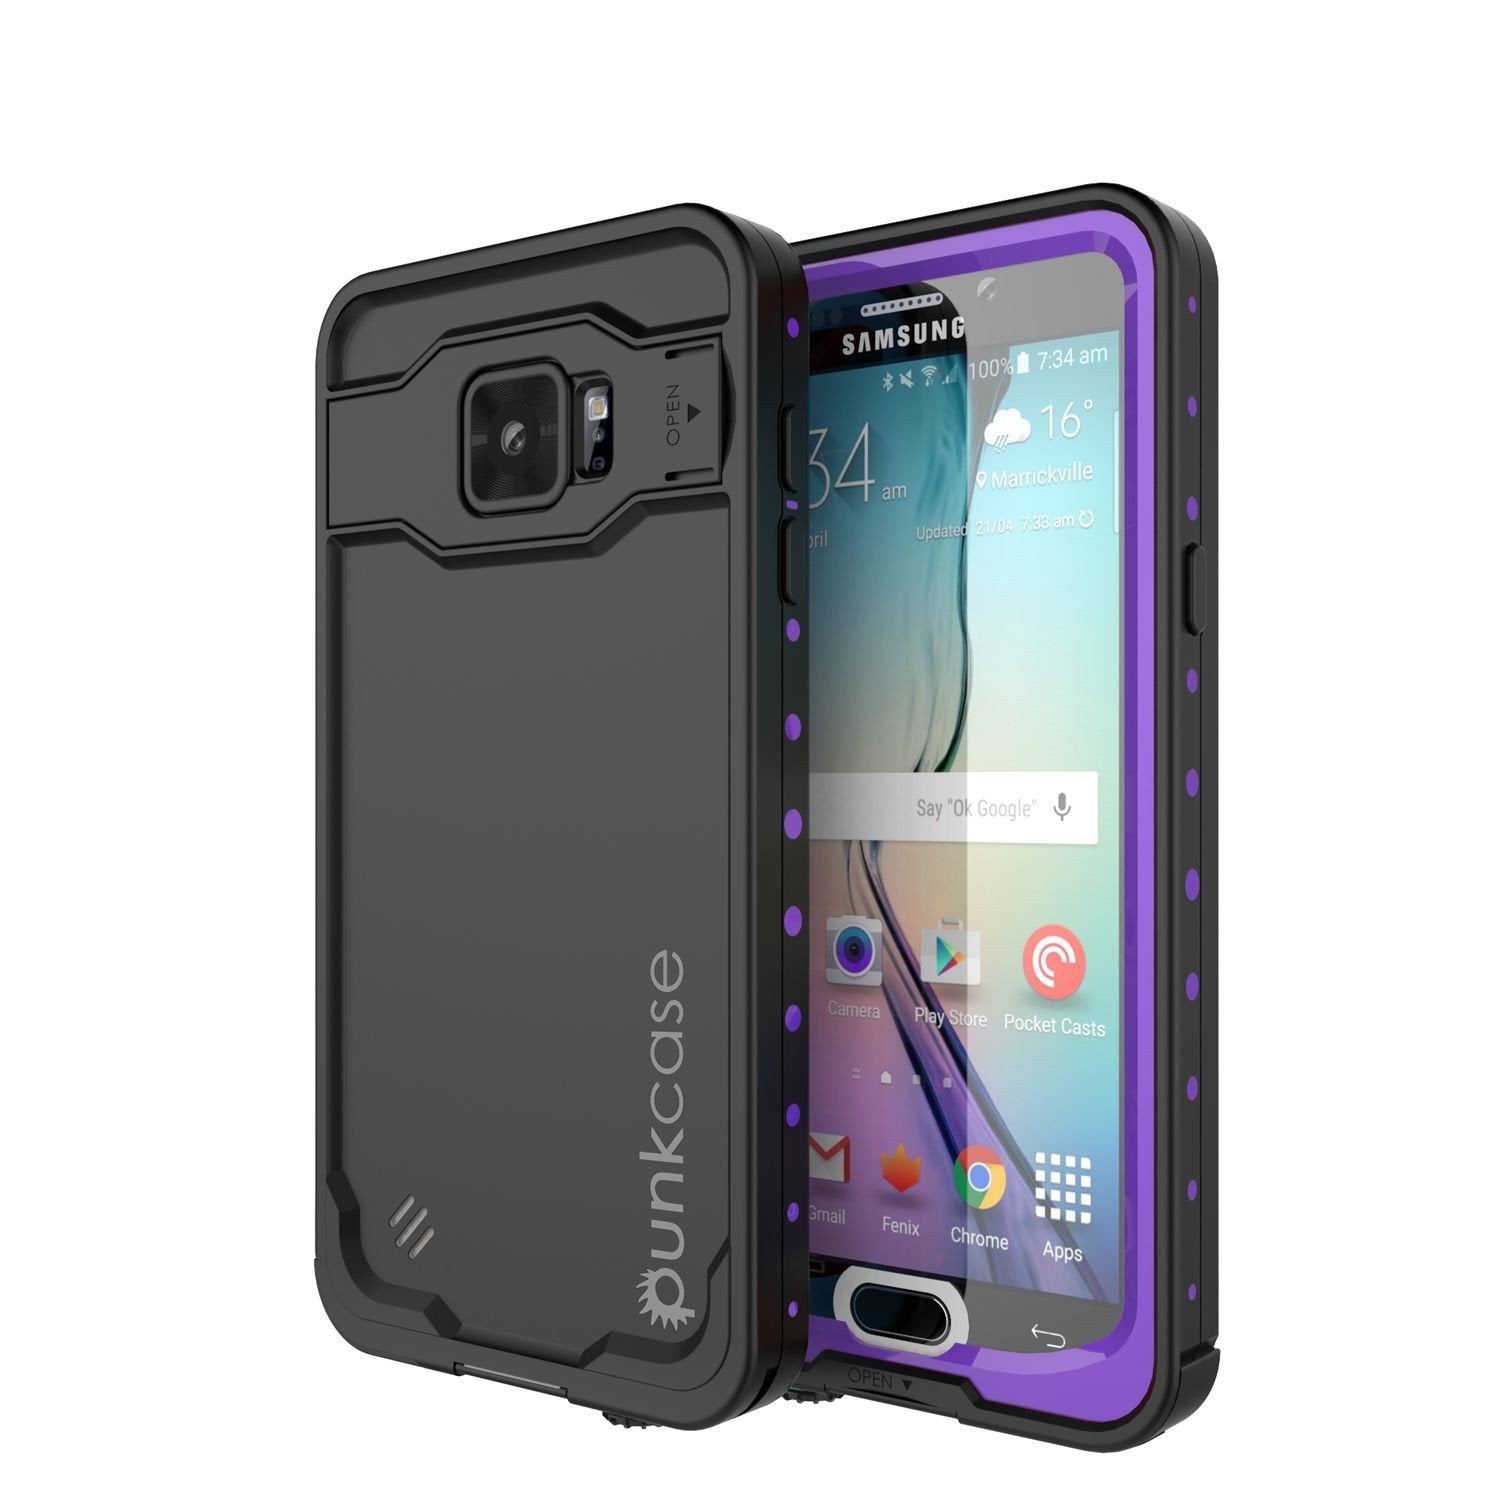 Galaxy Note 5 Waterproof Case, PunkCase StudStar Purple Shock/Dirt/Snow Proof | Lifetime Warranty